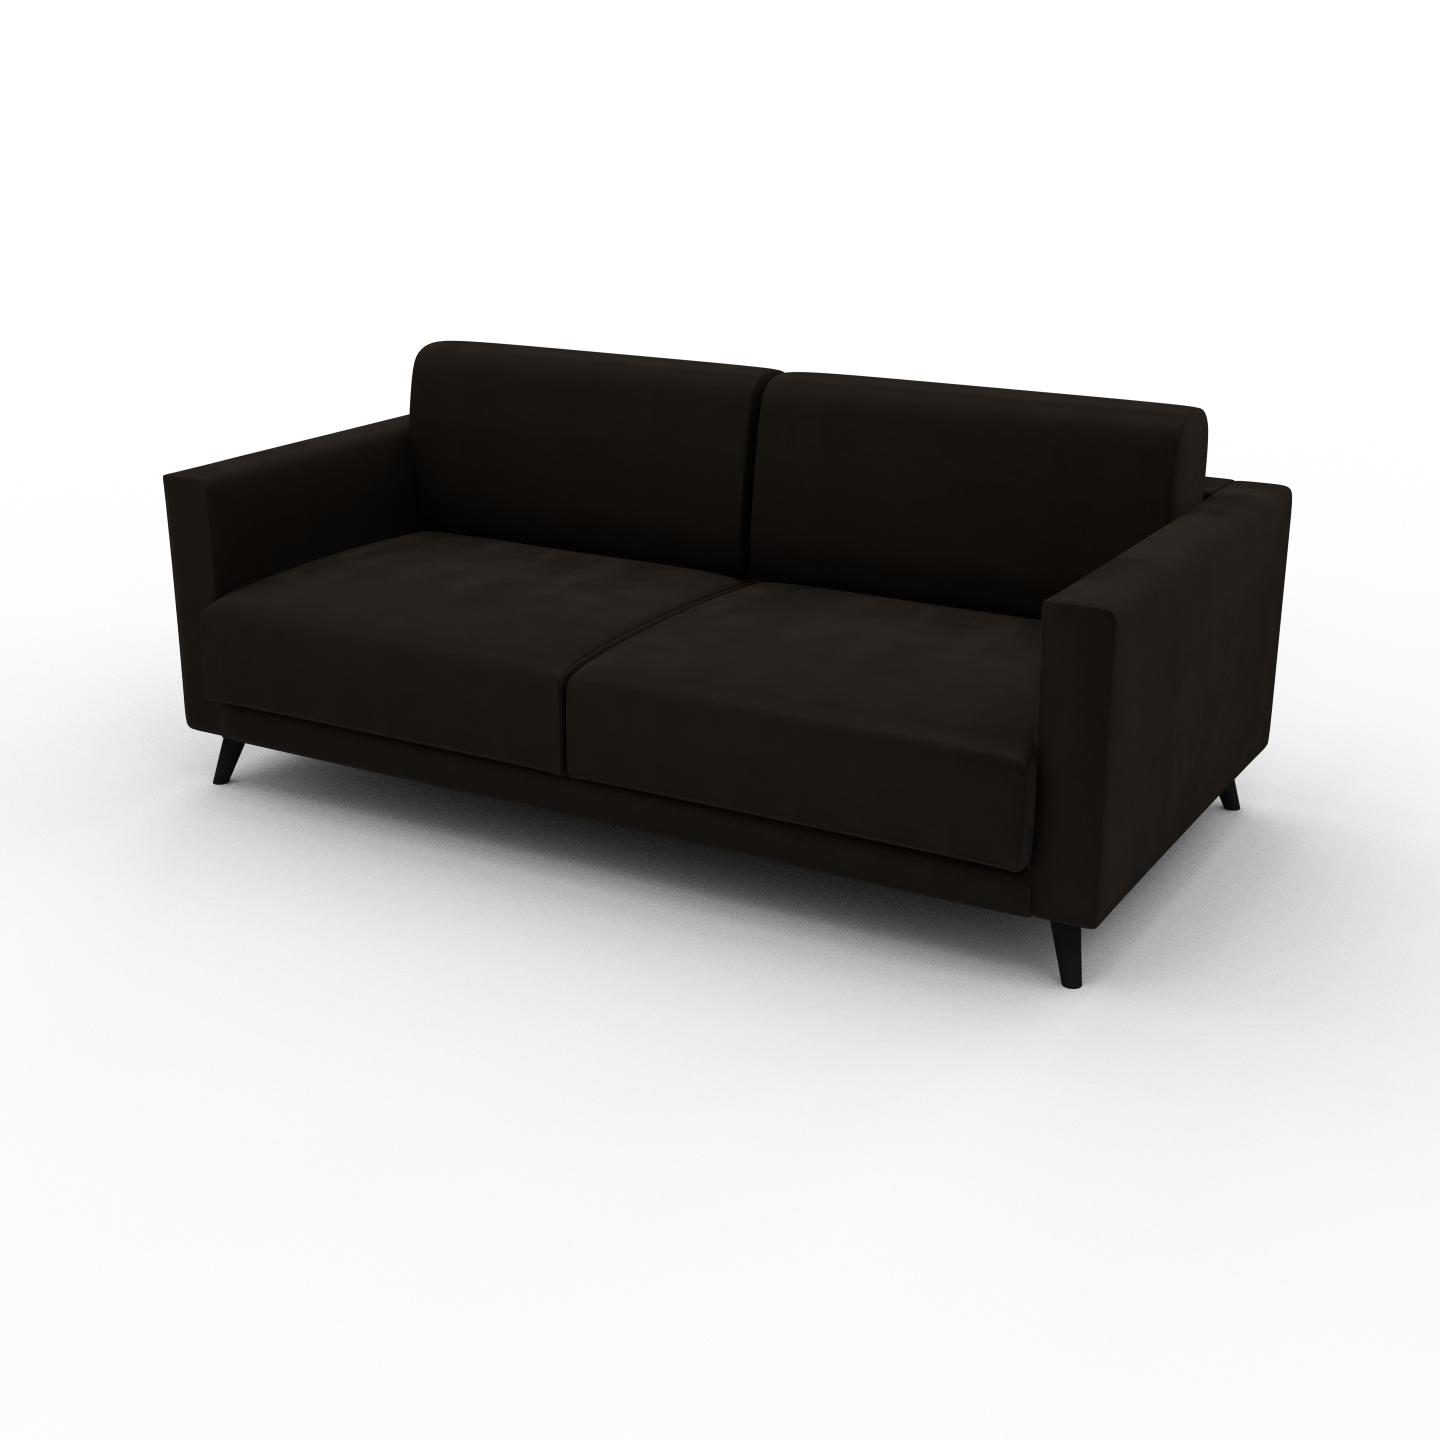 MYCS Sofa 2-Sitzer Samt Kaffeebraun Samt - Elegantes, gemütliches 2-Sitzer Sofa: Hochwertige Qualität, einzigartiges Design - 185 x 75 x 98 cm,...